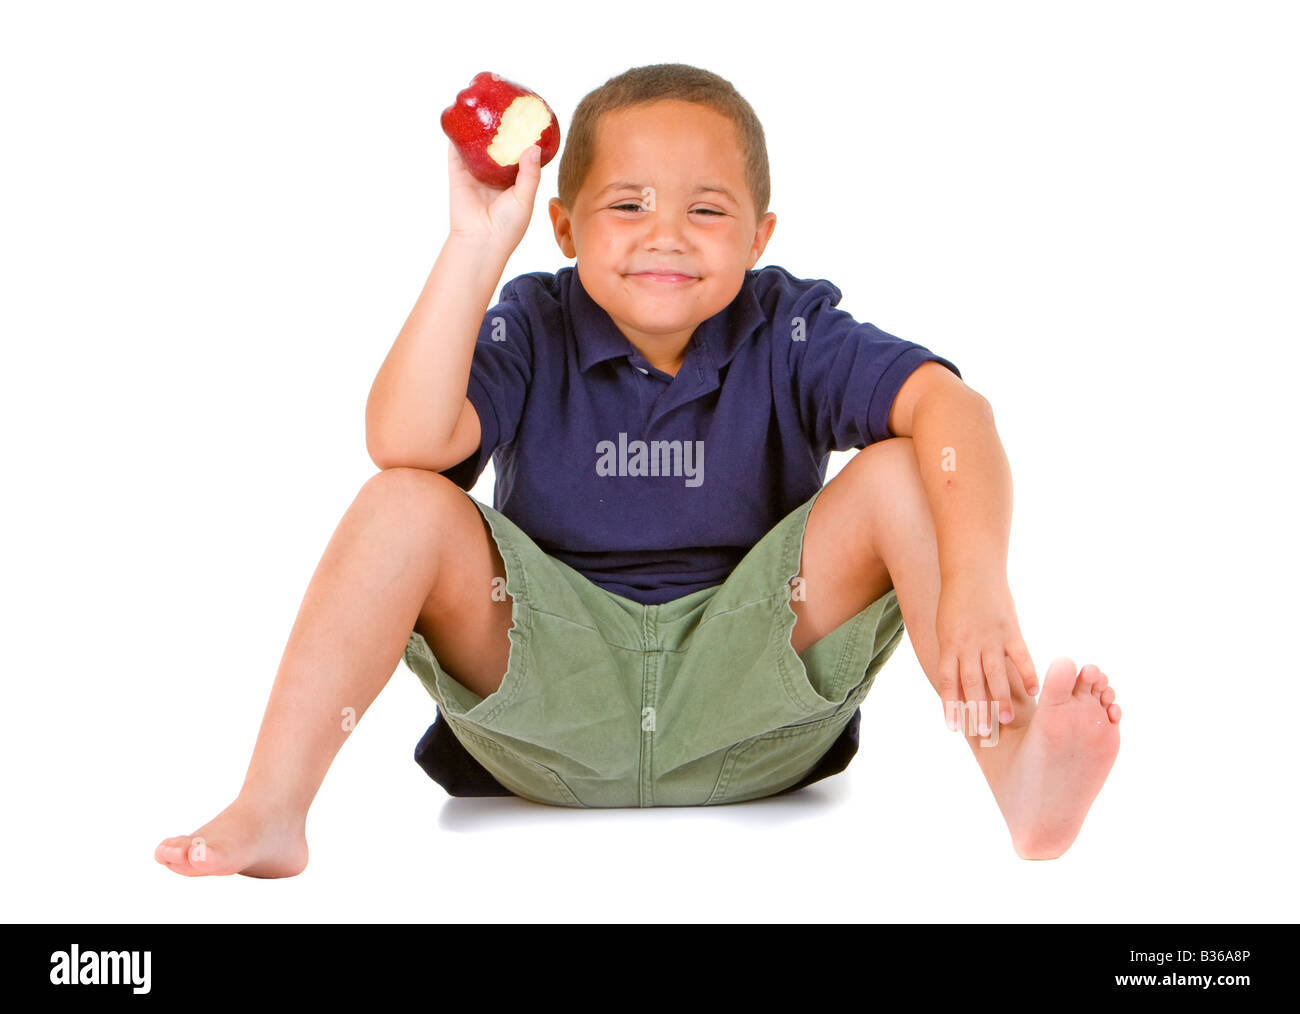 Junge Latino Boy sitzen und halten einen leuchtenden roten Apfel auf dem weißen Hintergrund isoliert Stockfoto